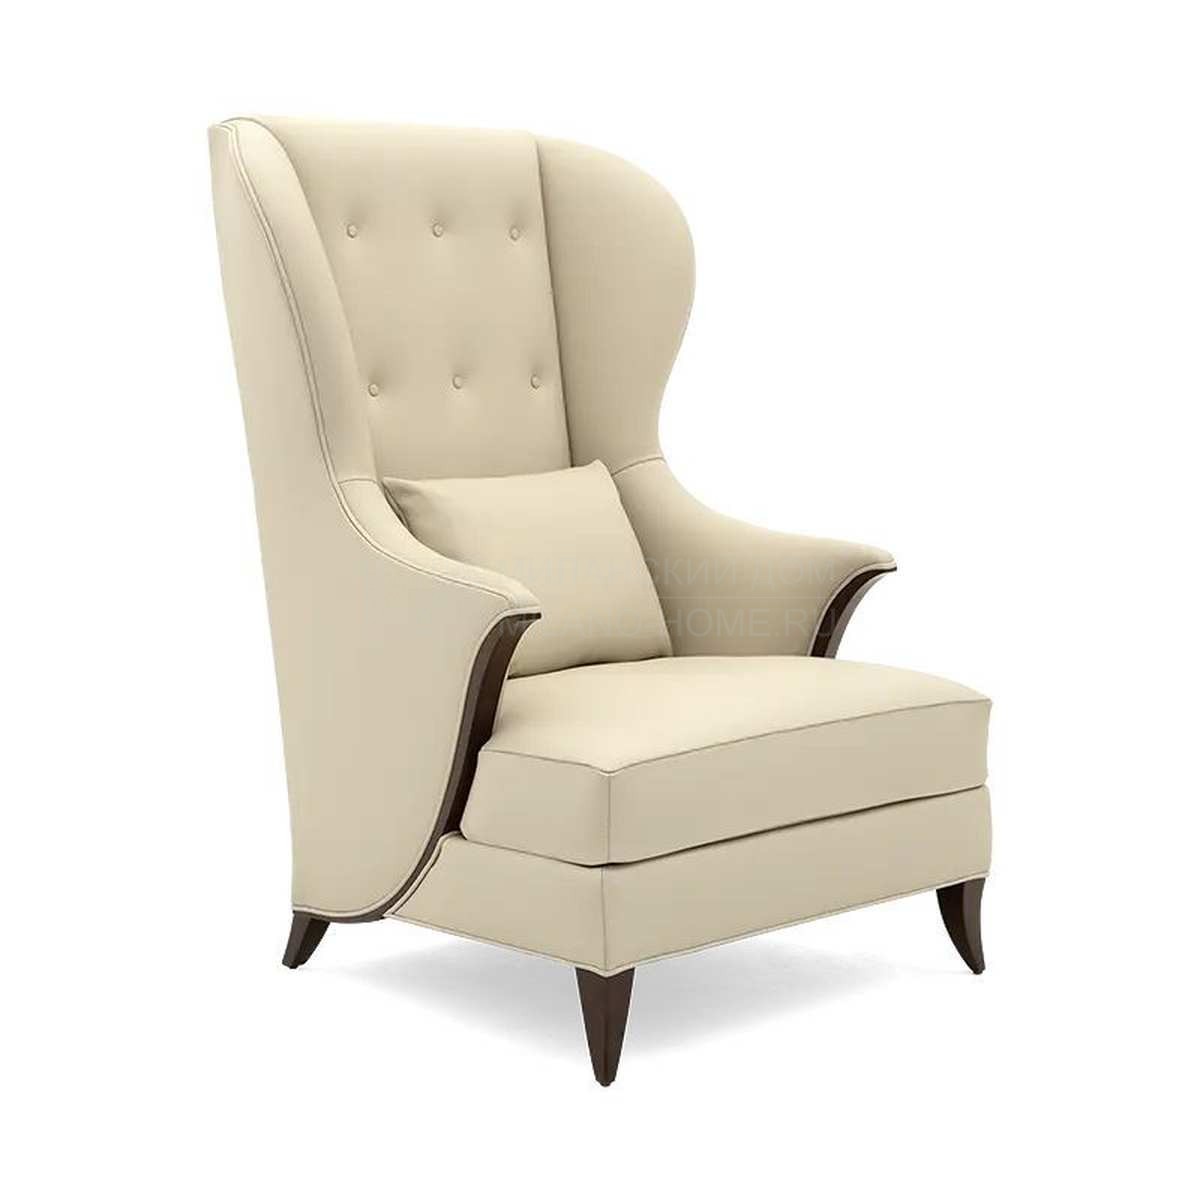 Каминное кресло Sovrano armchair   из США фабрики CHRISTOPHER GUY